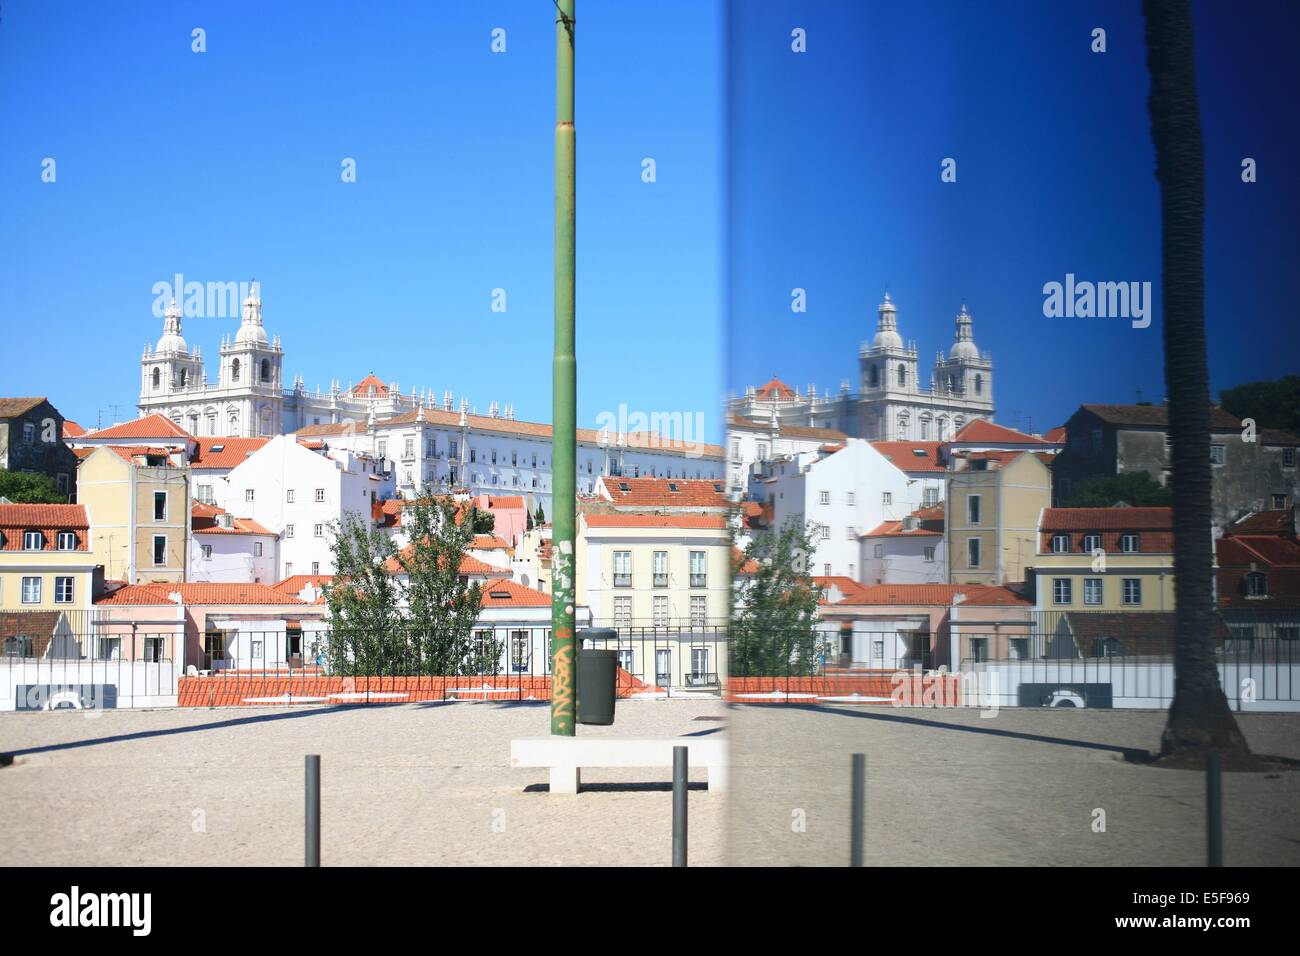 portugal, lisbonne, lisboa, signes de ville, alfama, panorama sur toits et le tage, reflet, paysage, toits Date : septembre 2011 Stock Photo